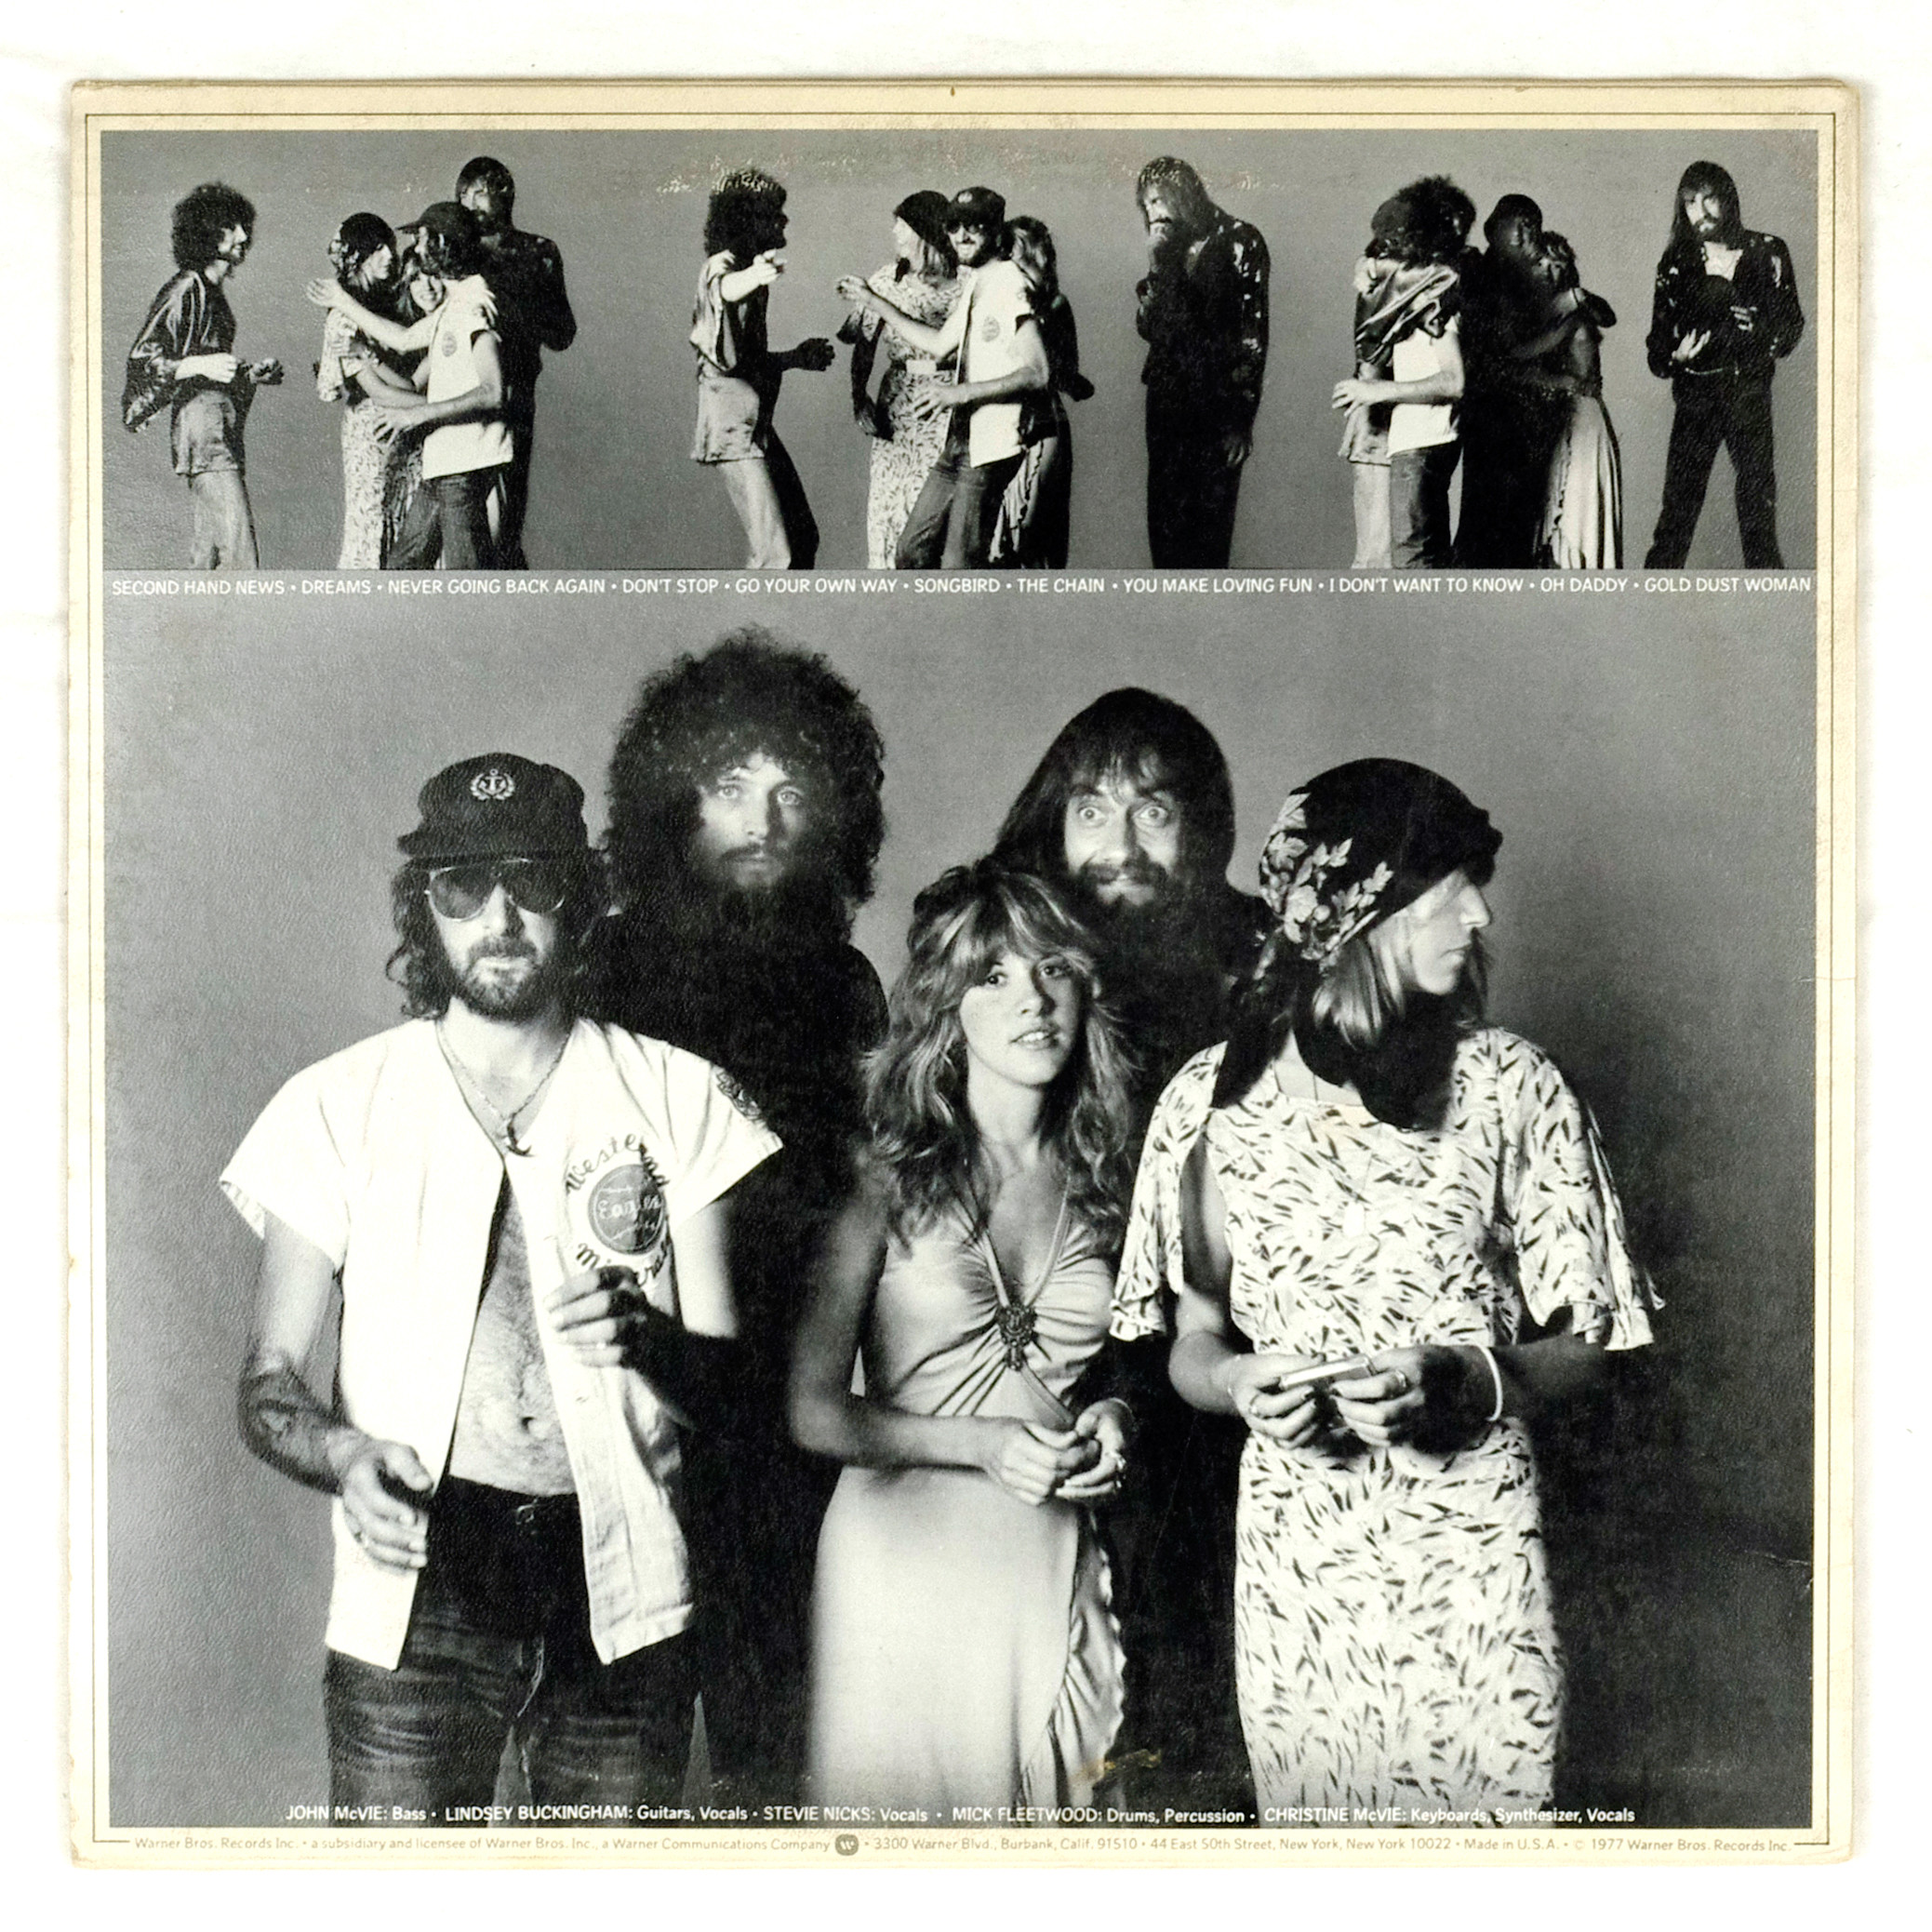 Fleetwood Mac ‎Vinyl Rumours 1977